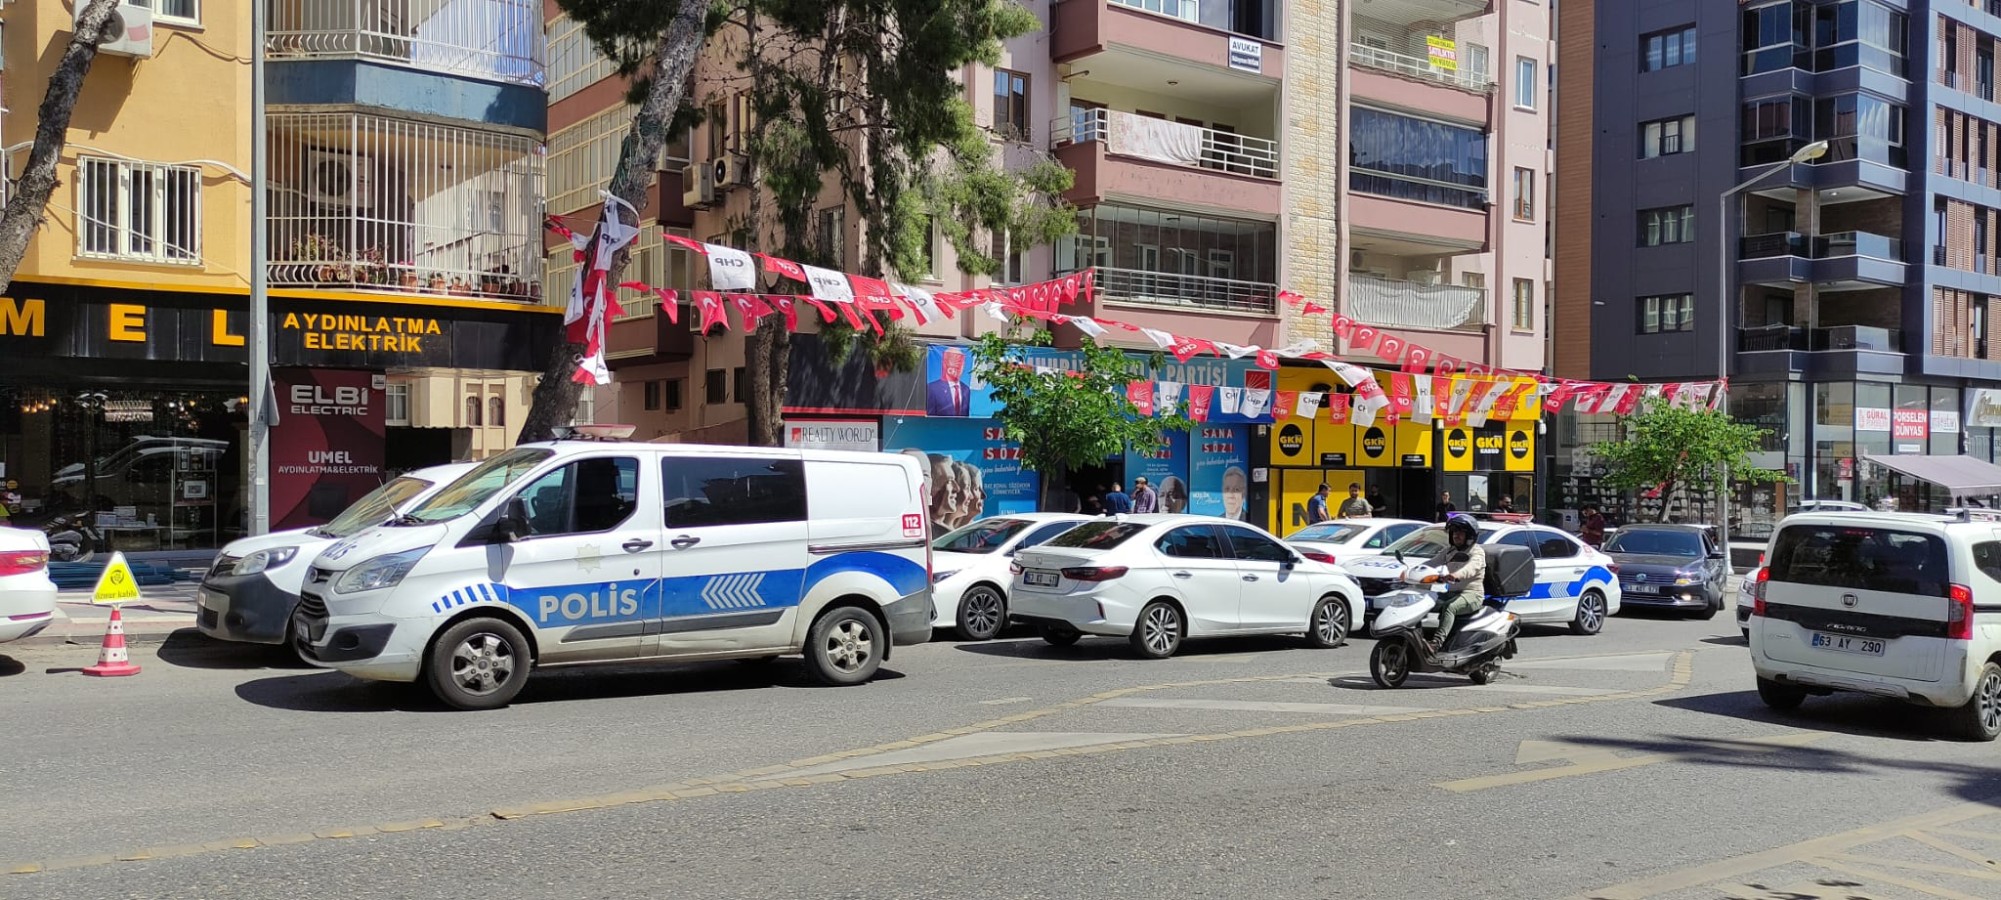 Urfa'da CHP'nin seçim ofisine mermi atıldığı ileri sürüldü;